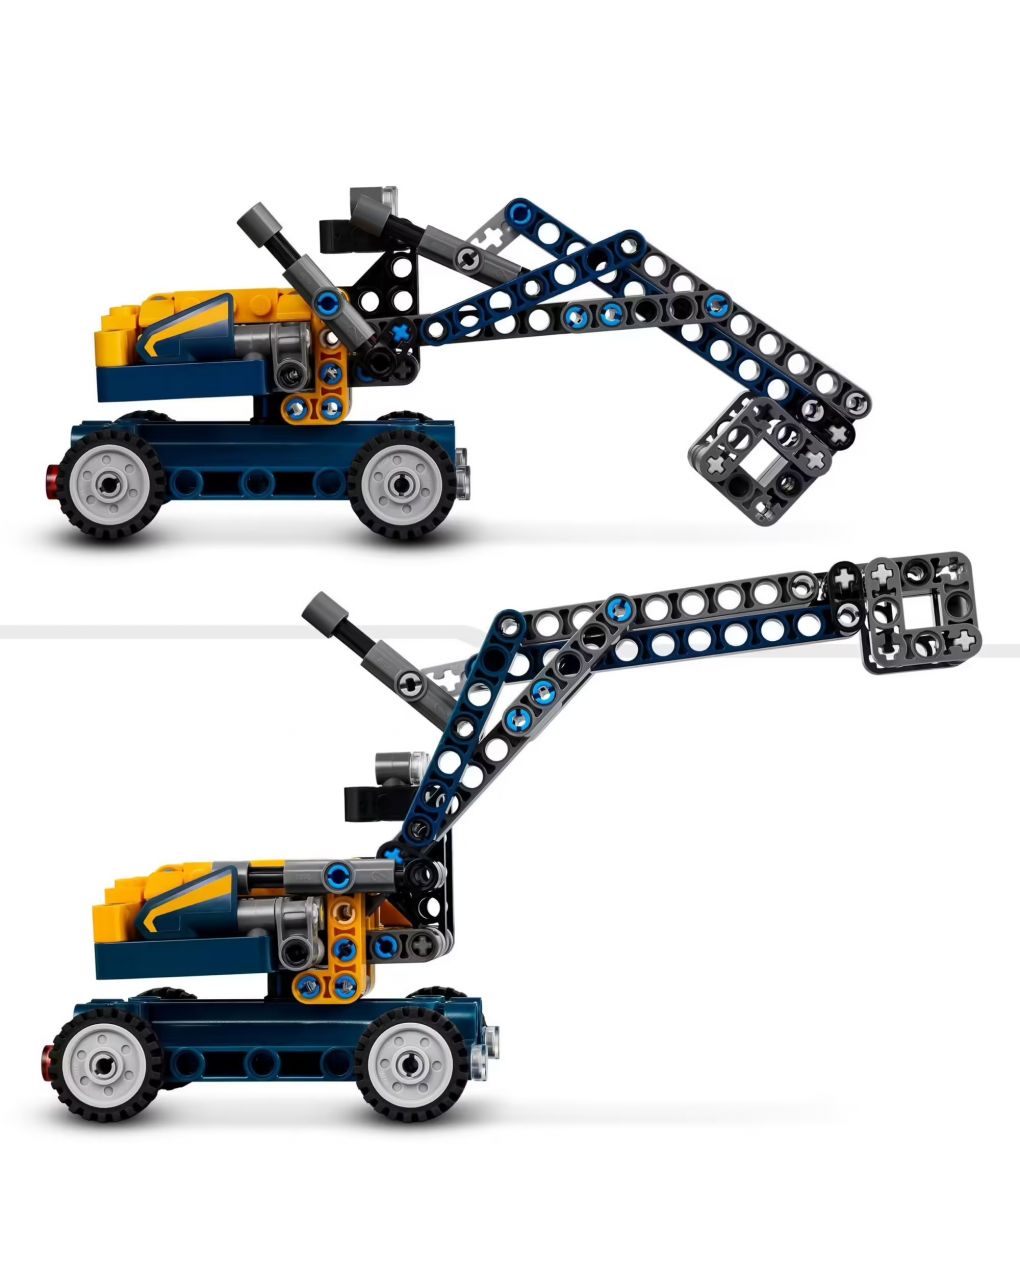 Camion ribaltabile set 2 in 1 con camioncino ed escavatore giocattolo - lego technic - LEGO